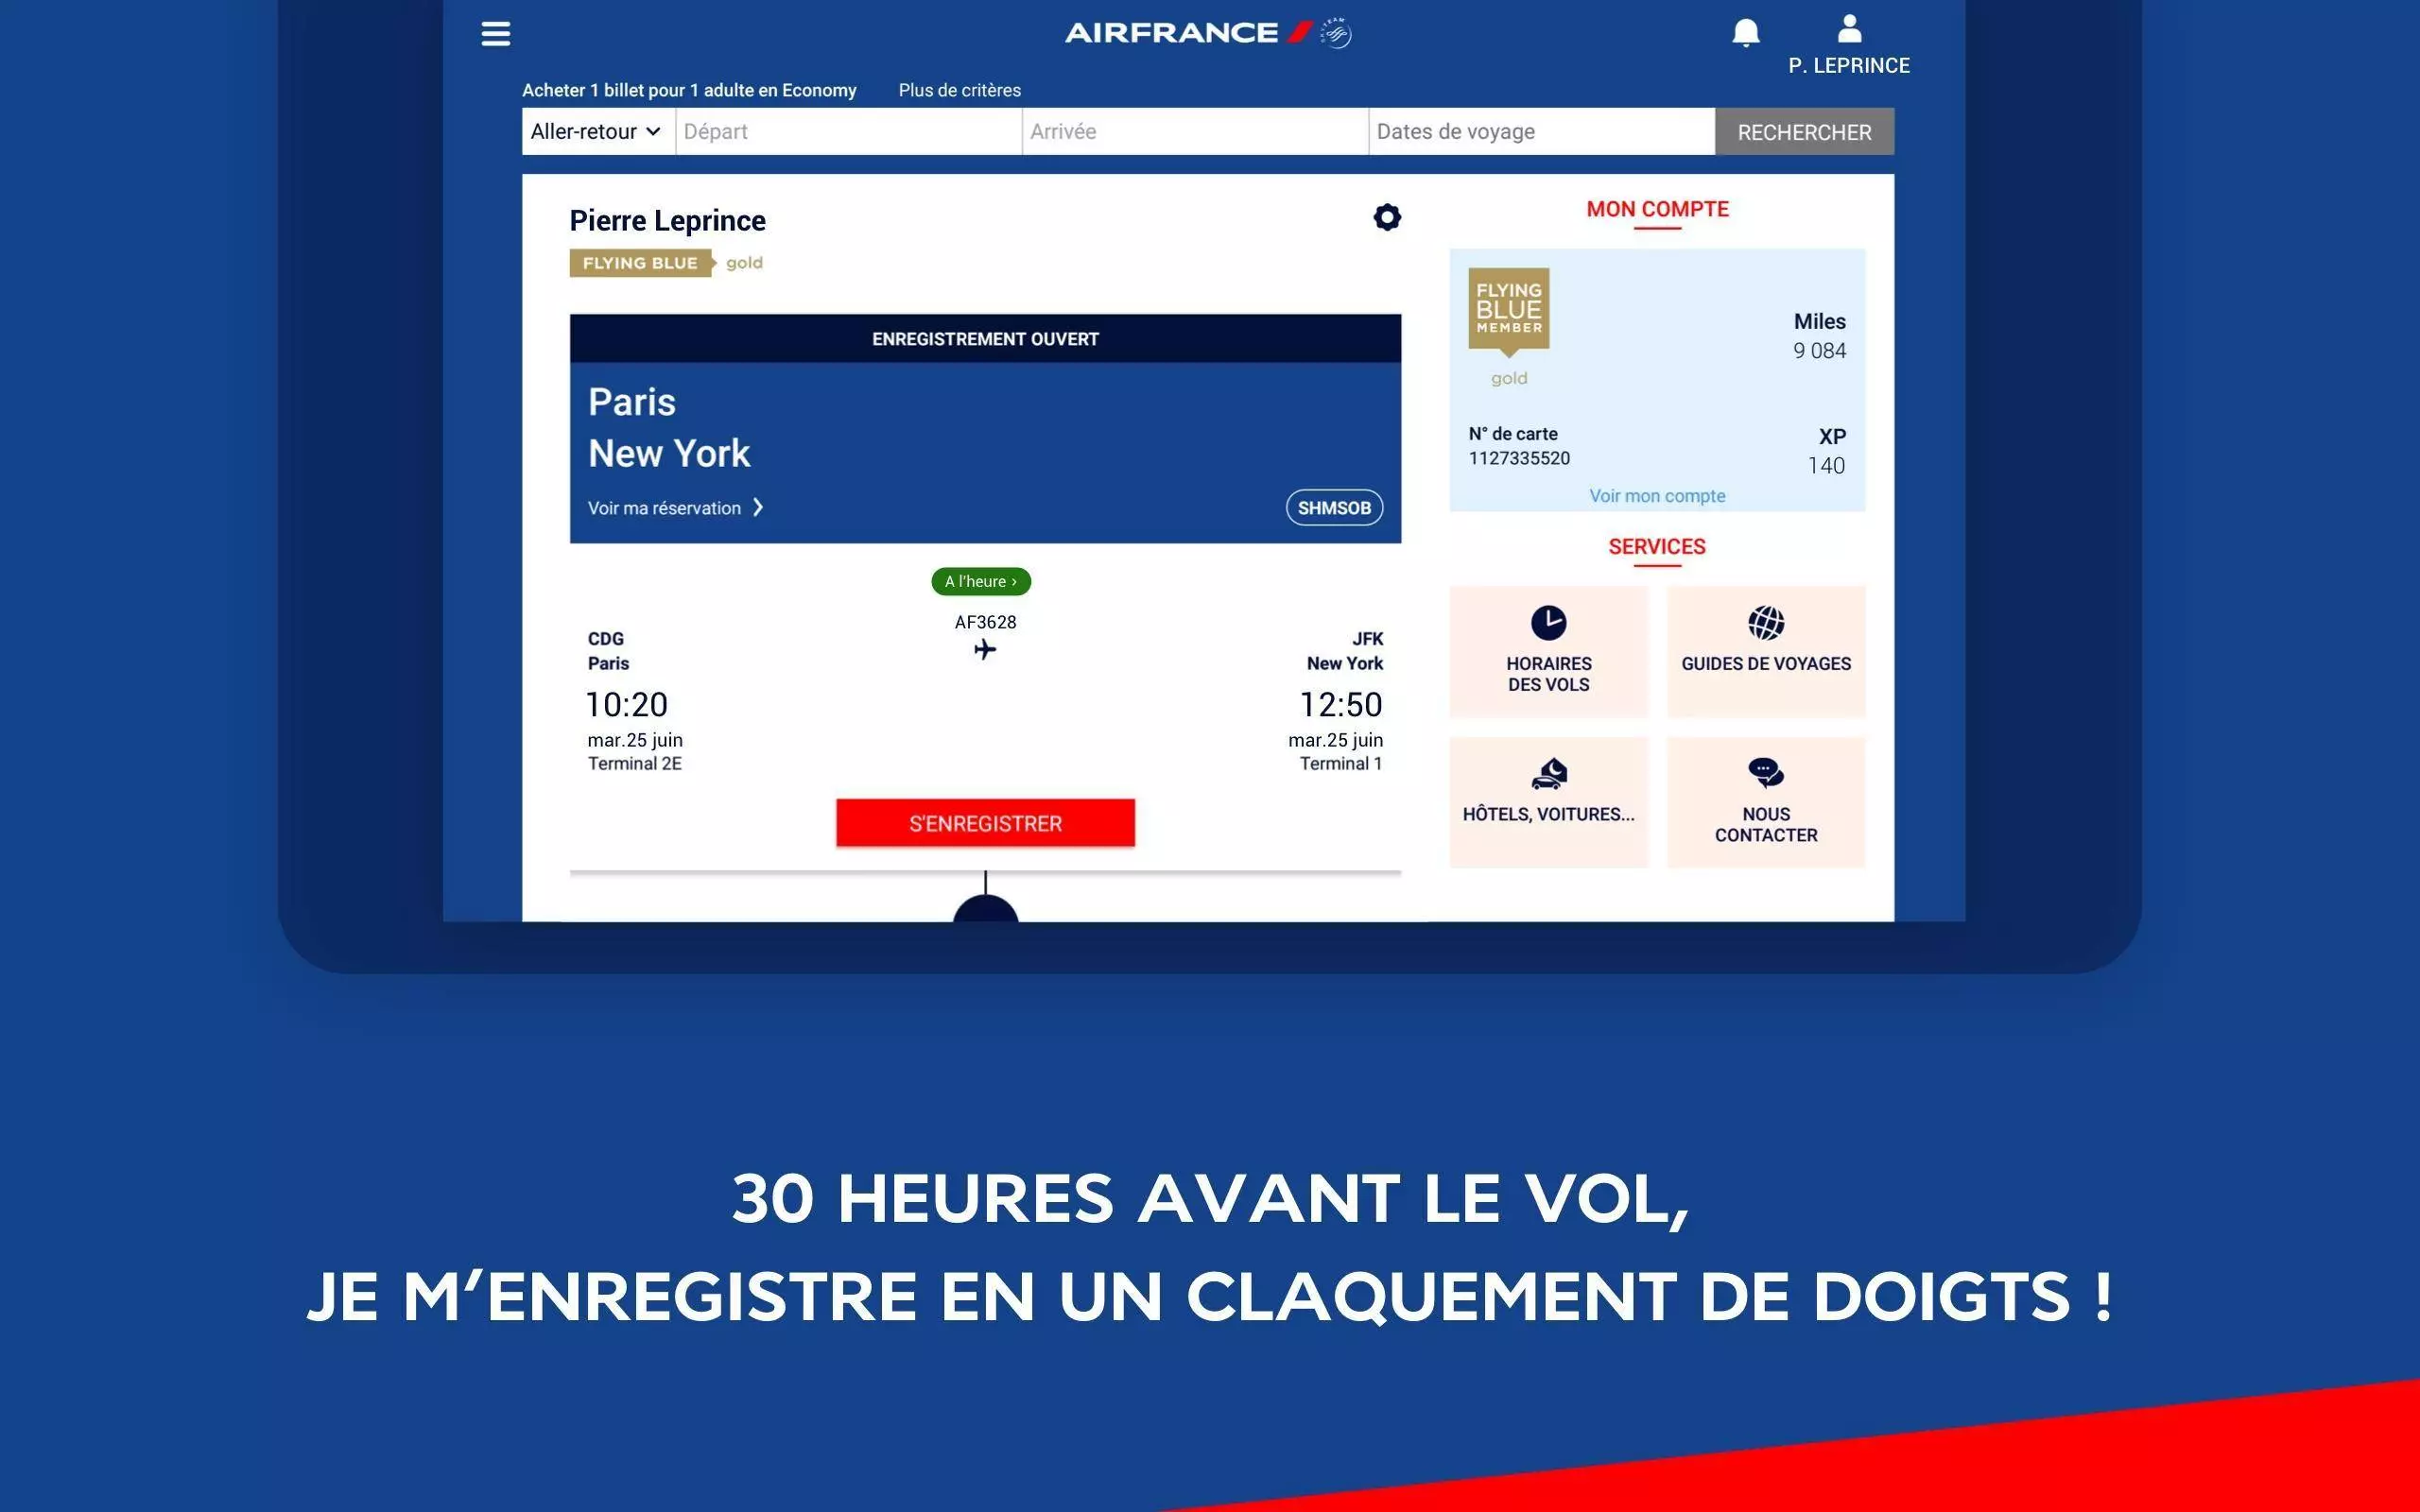 Автоматическая регистрация на рейсы air france